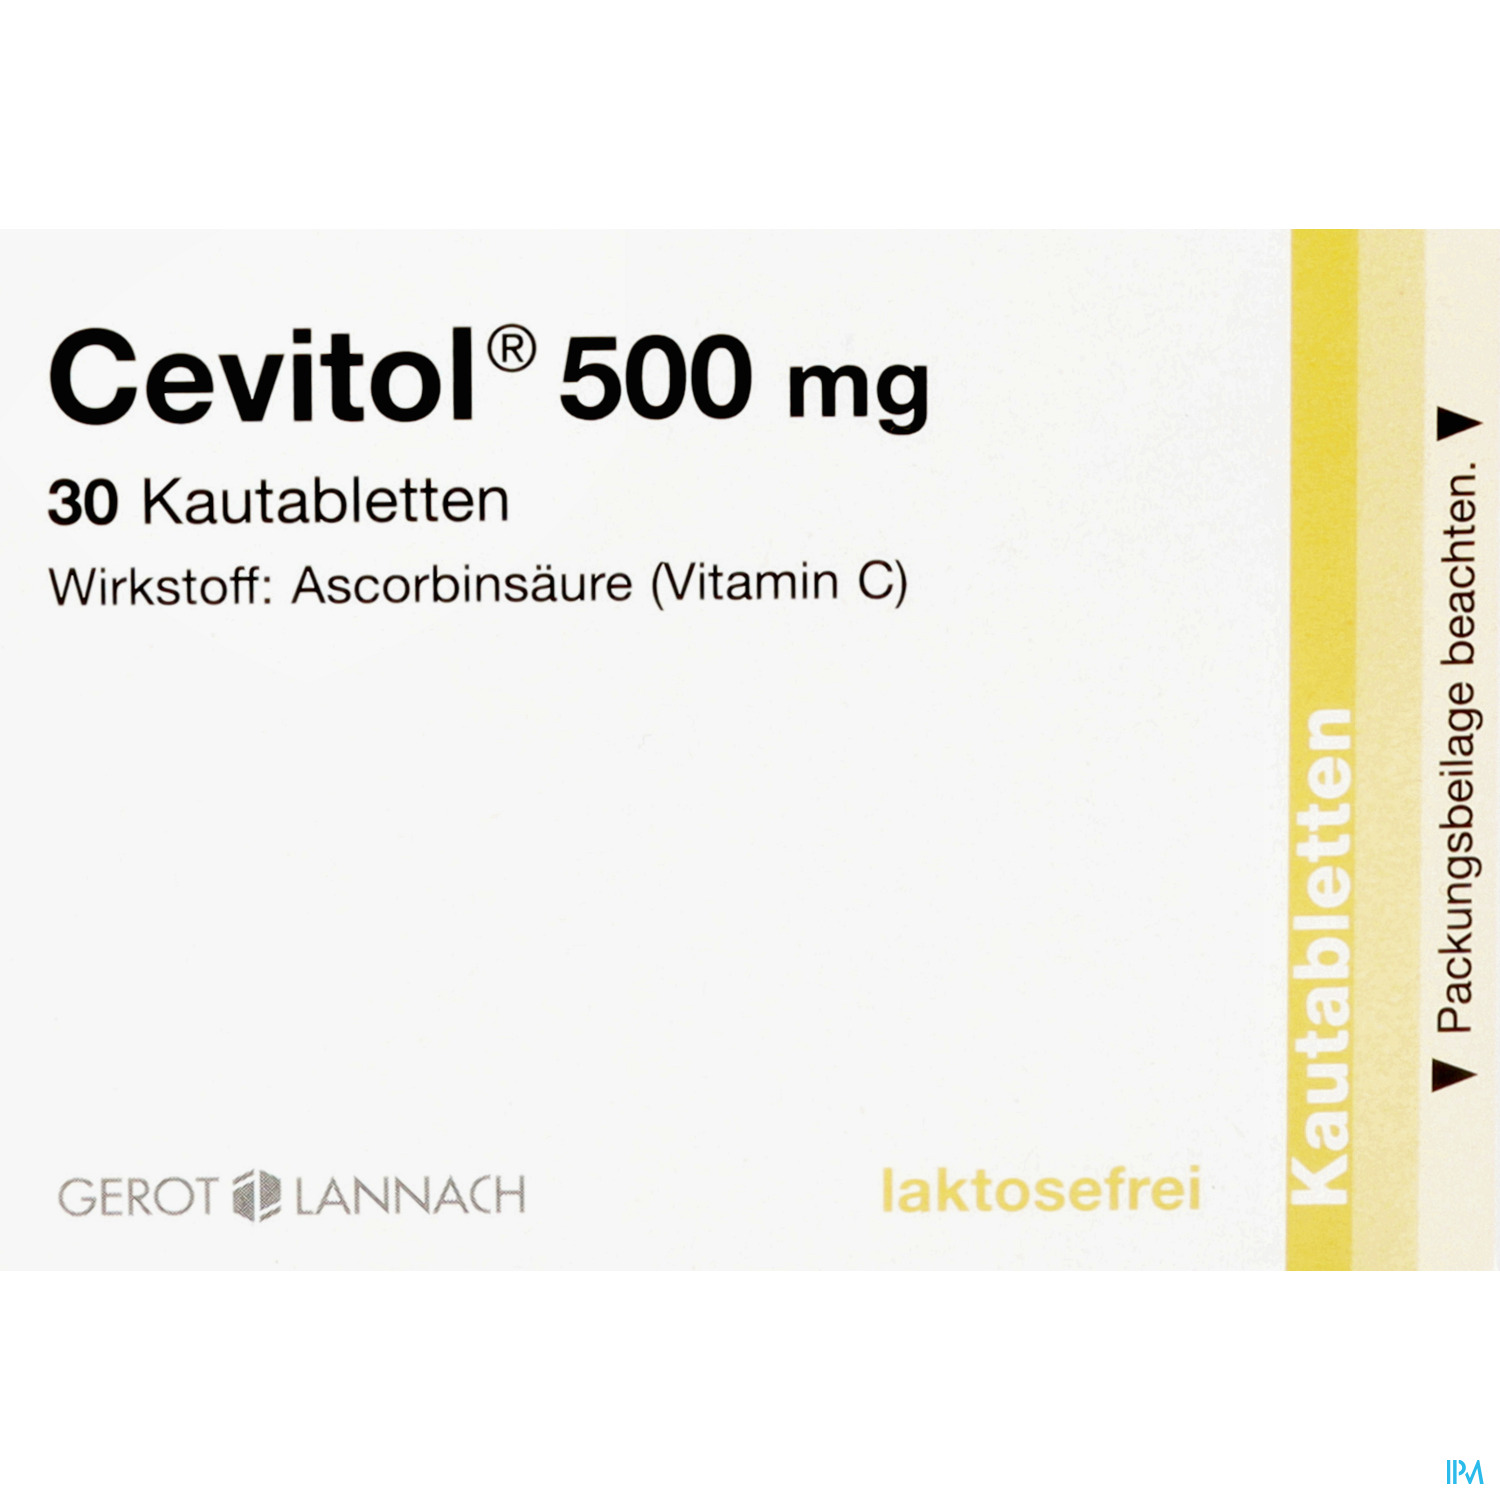 Cevitol 500 mg - Kautabletten